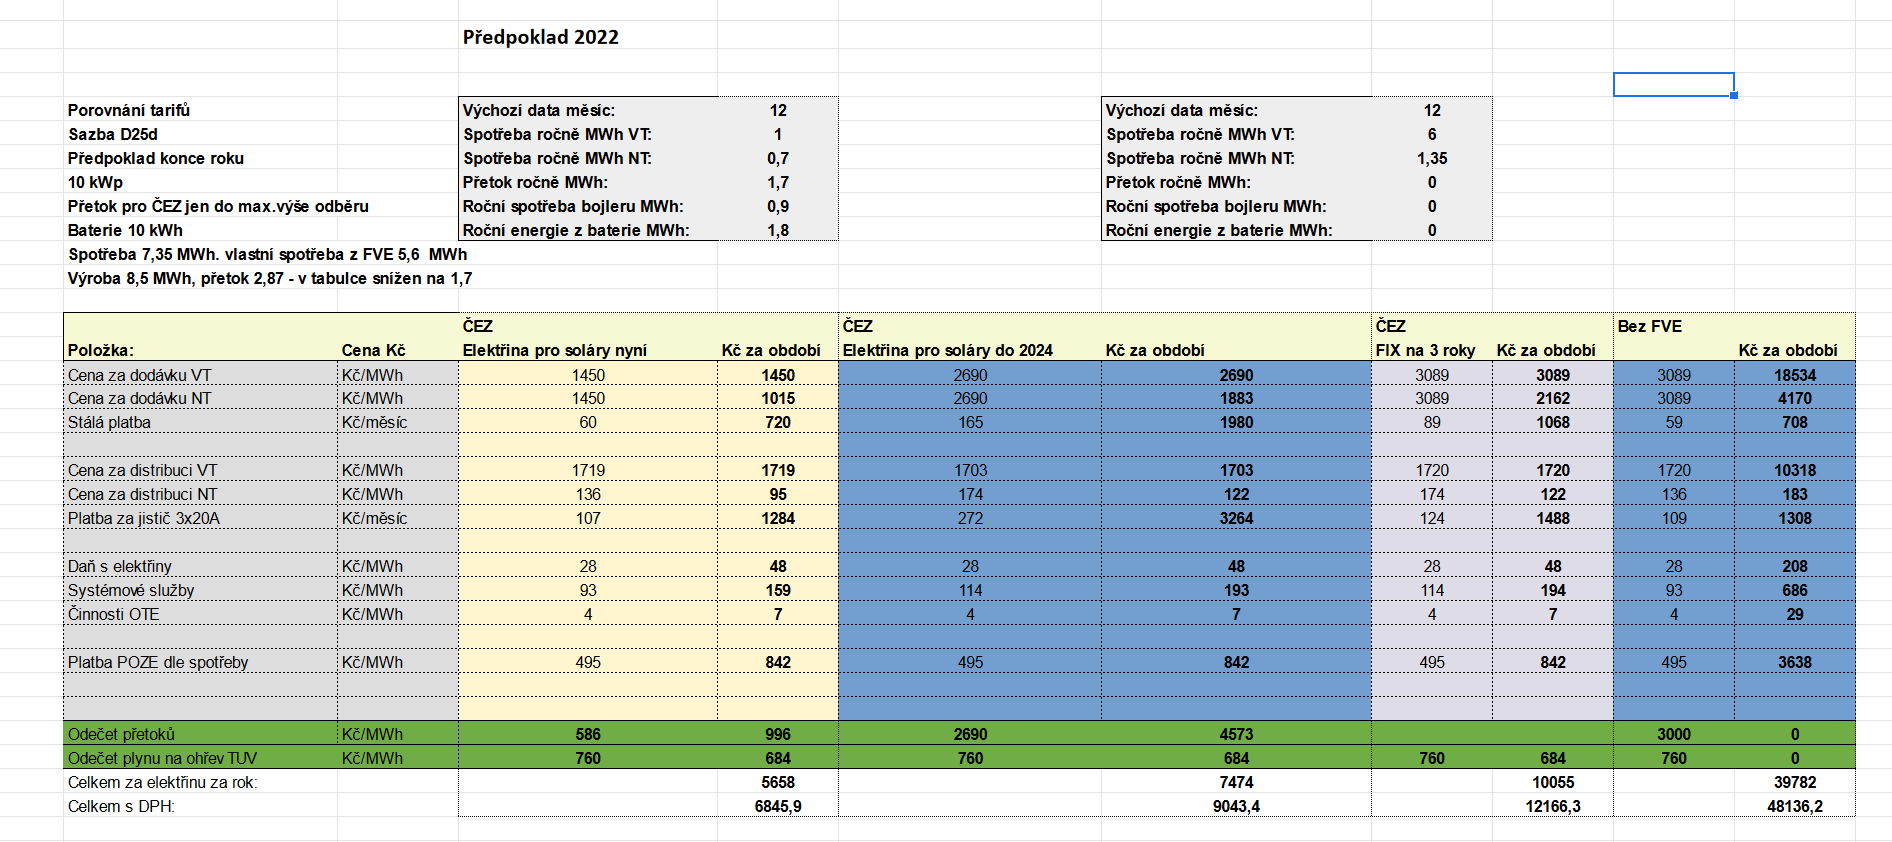 Screenshot 2022-01-30 at 13-08-23 Porovnání tarifů virtuální baterie od ČEZu a ostatních xlsx.png